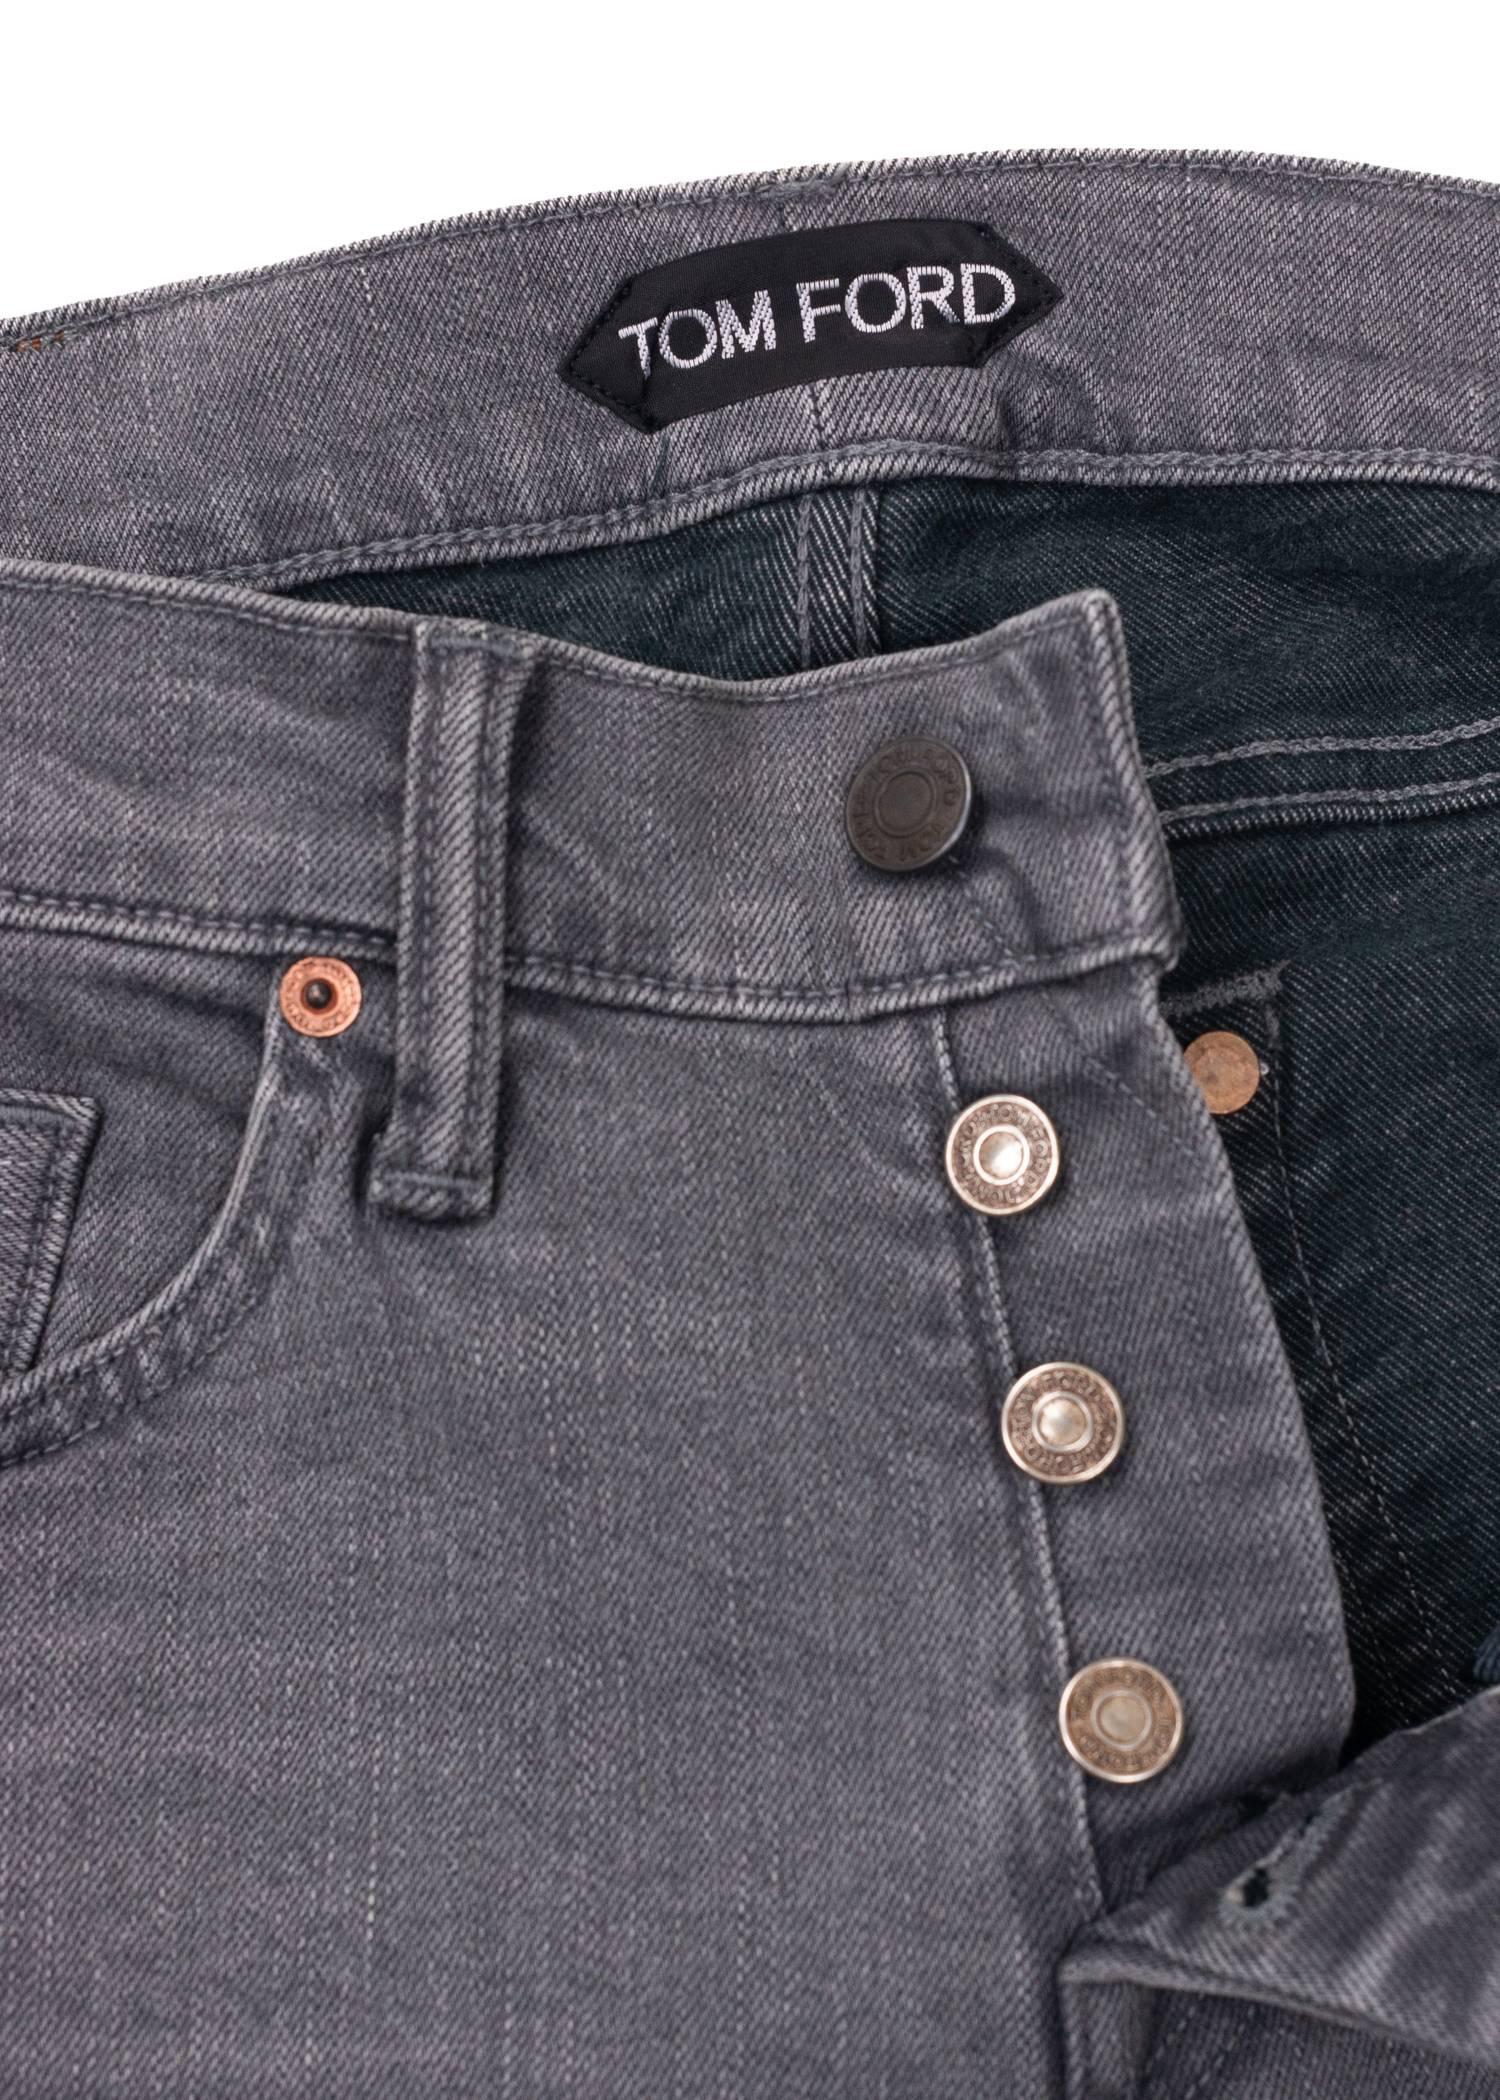 Gray Tom Ford Selvedge Denim Jeans Light Grey Wash Size 36 Regular Fit Model   For Sale